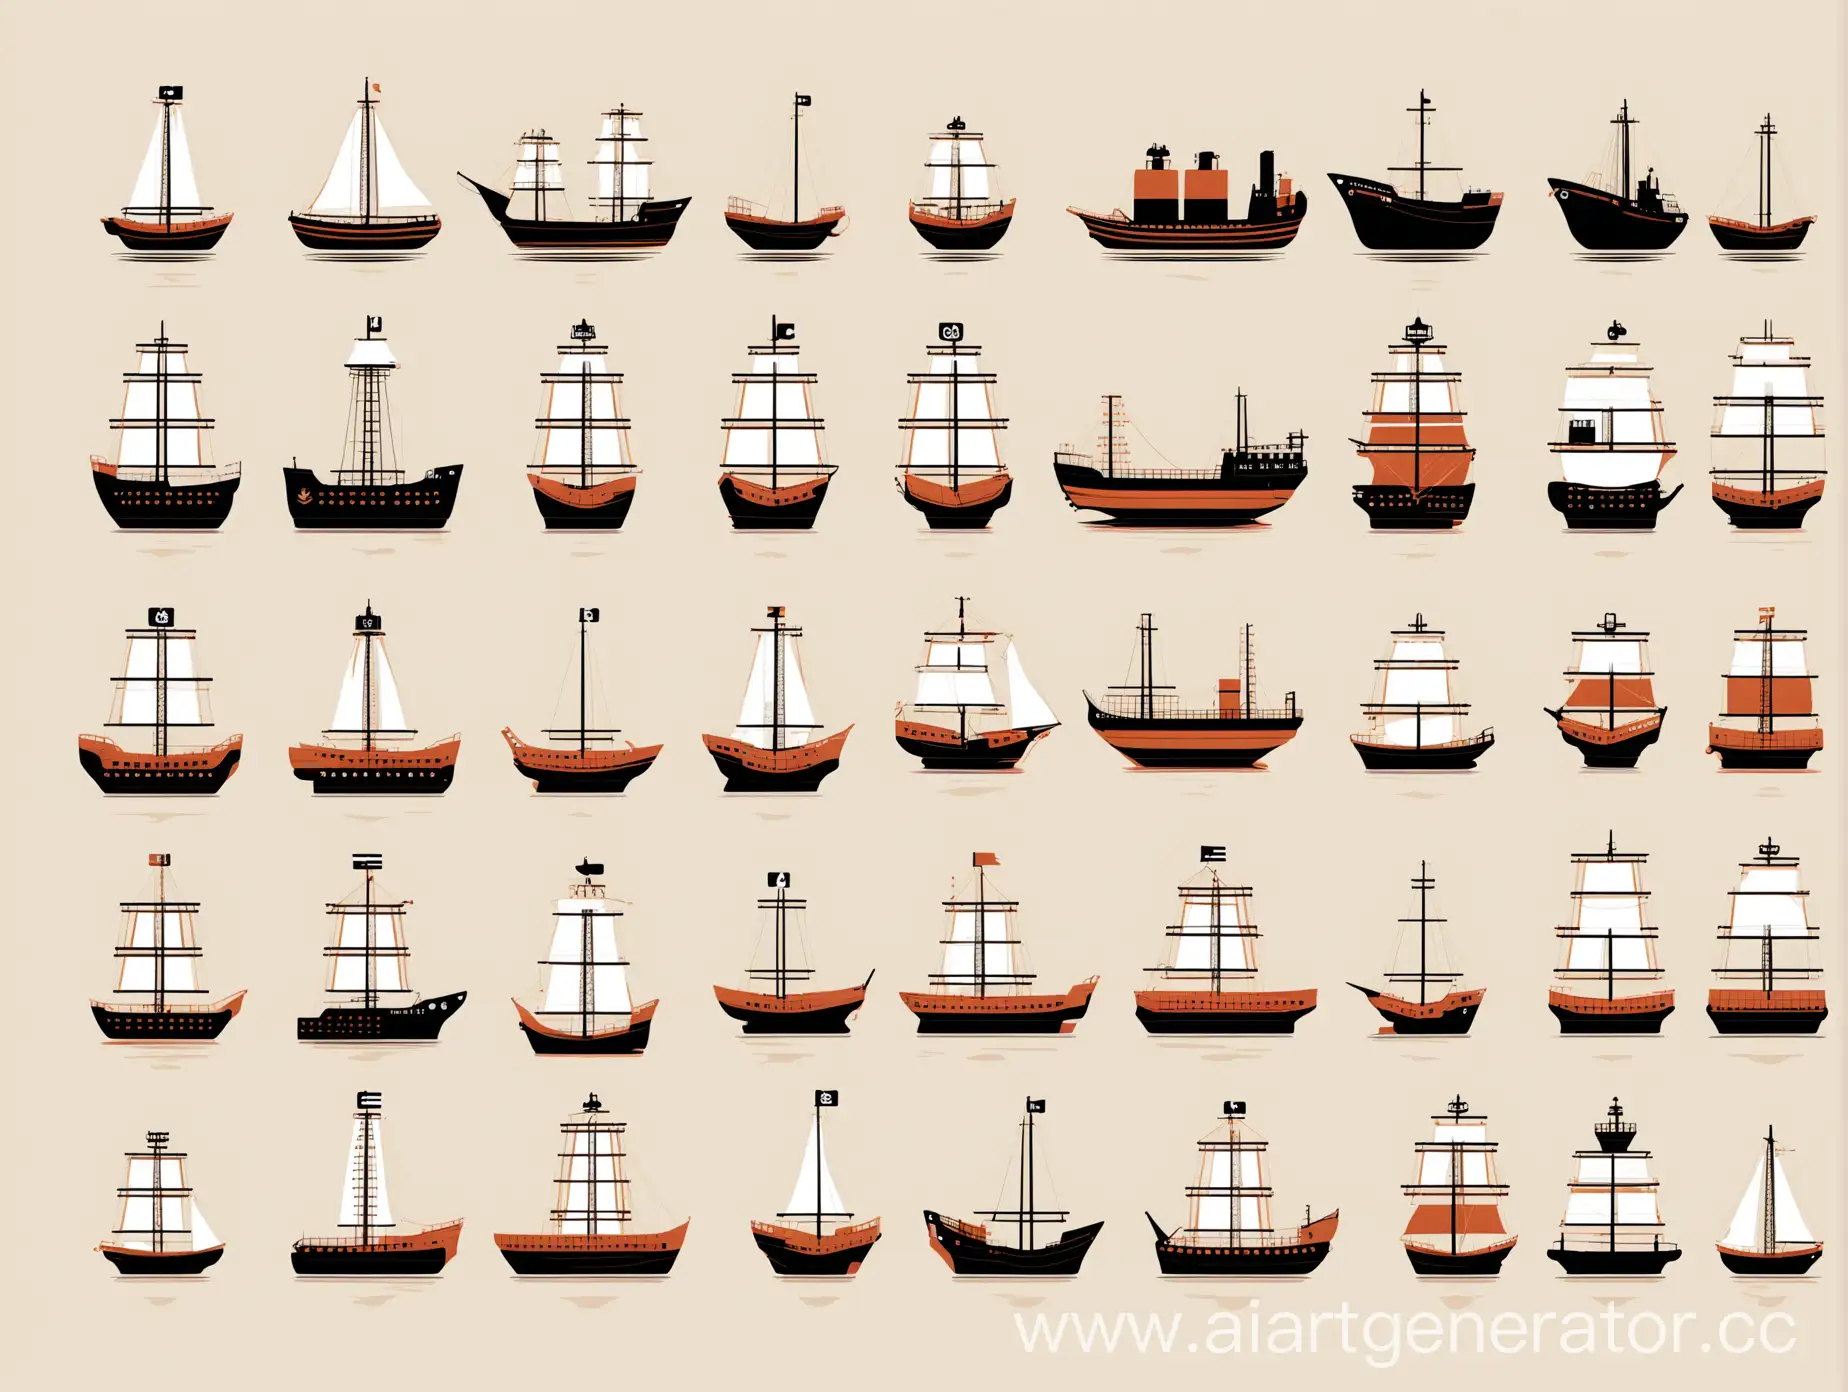 минимализм, инфографика, иконки корабля, иконки судна, много вариантов, много отдельных картинок